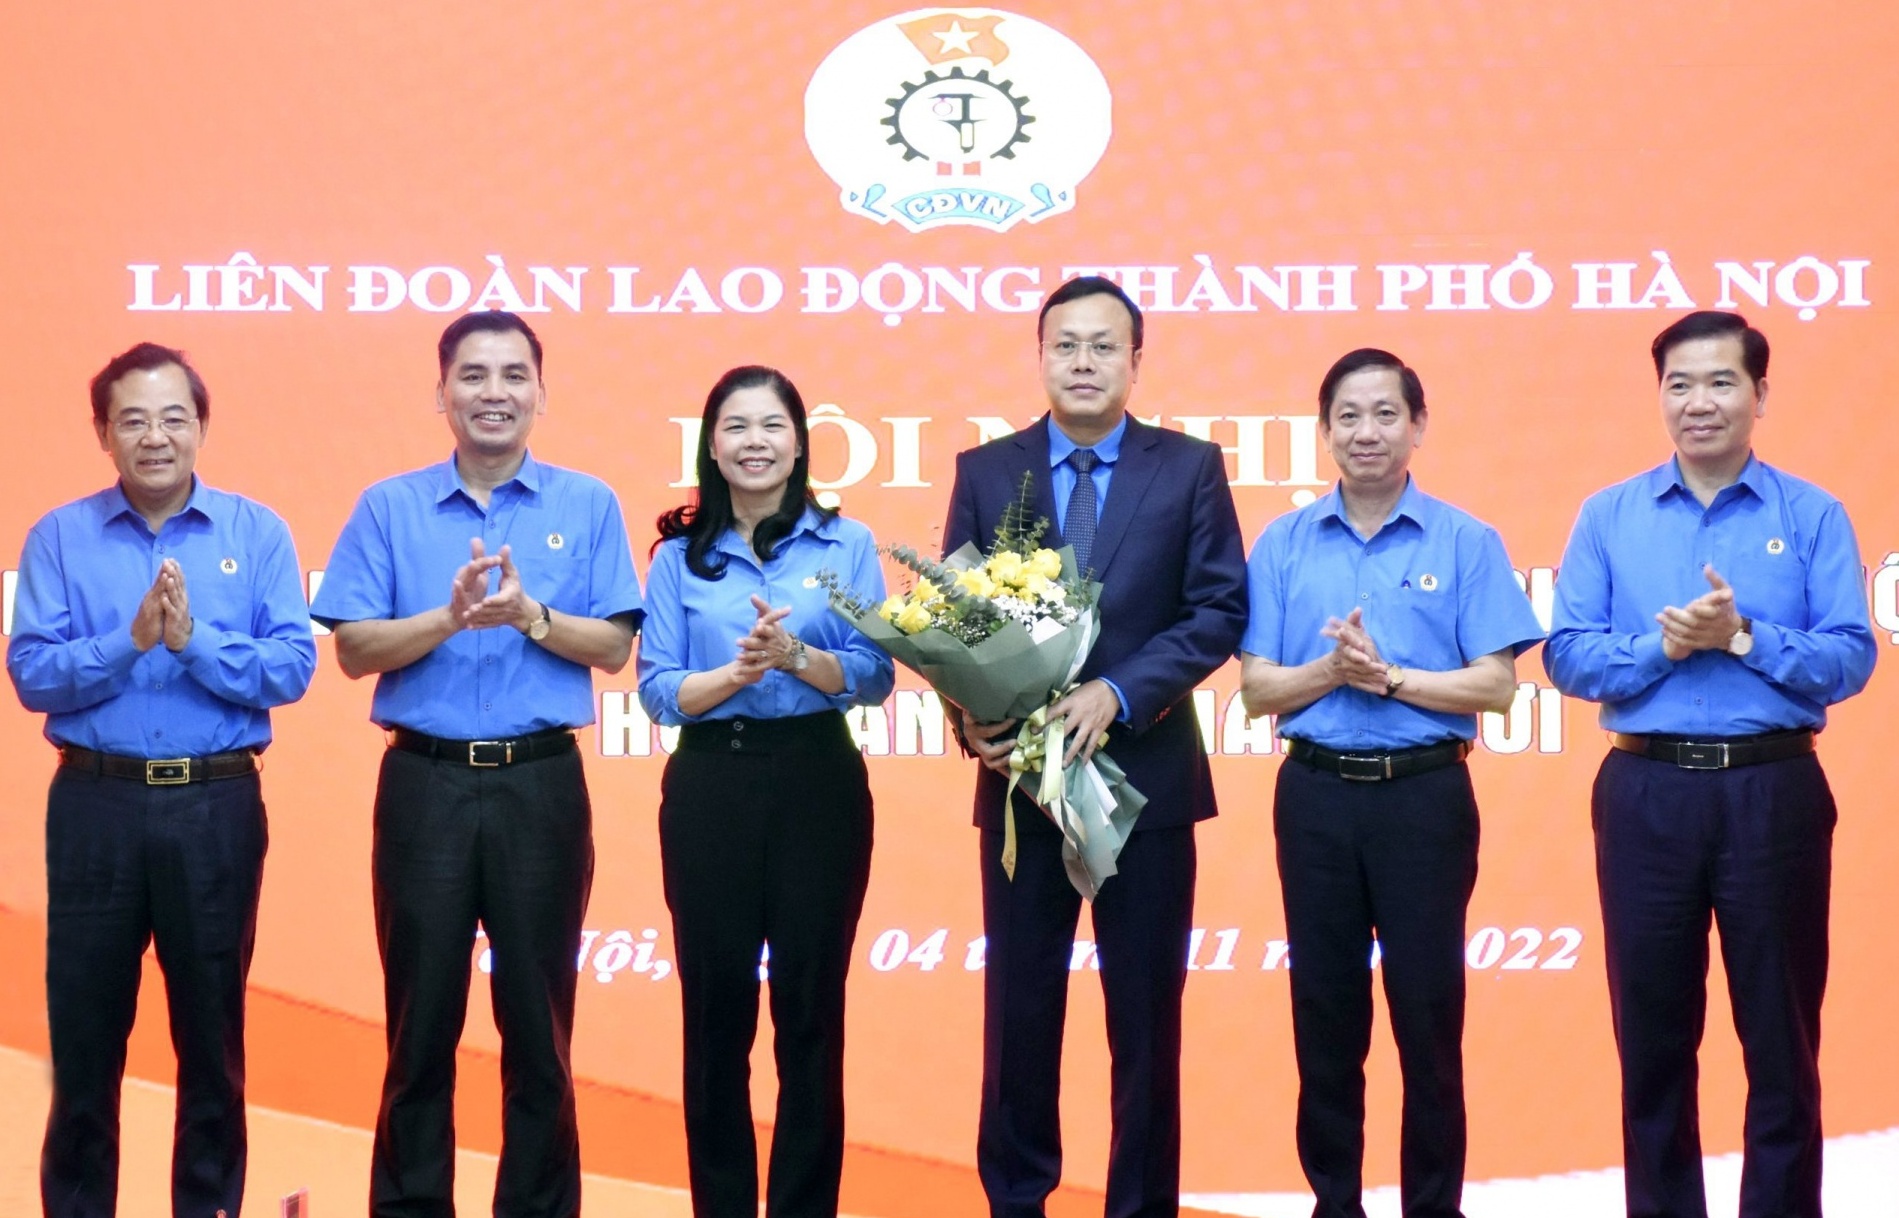 Đồng chí Phạm Quang Thanh được bầu làm Chủ tịch LĐLĐ TP Hà Nội